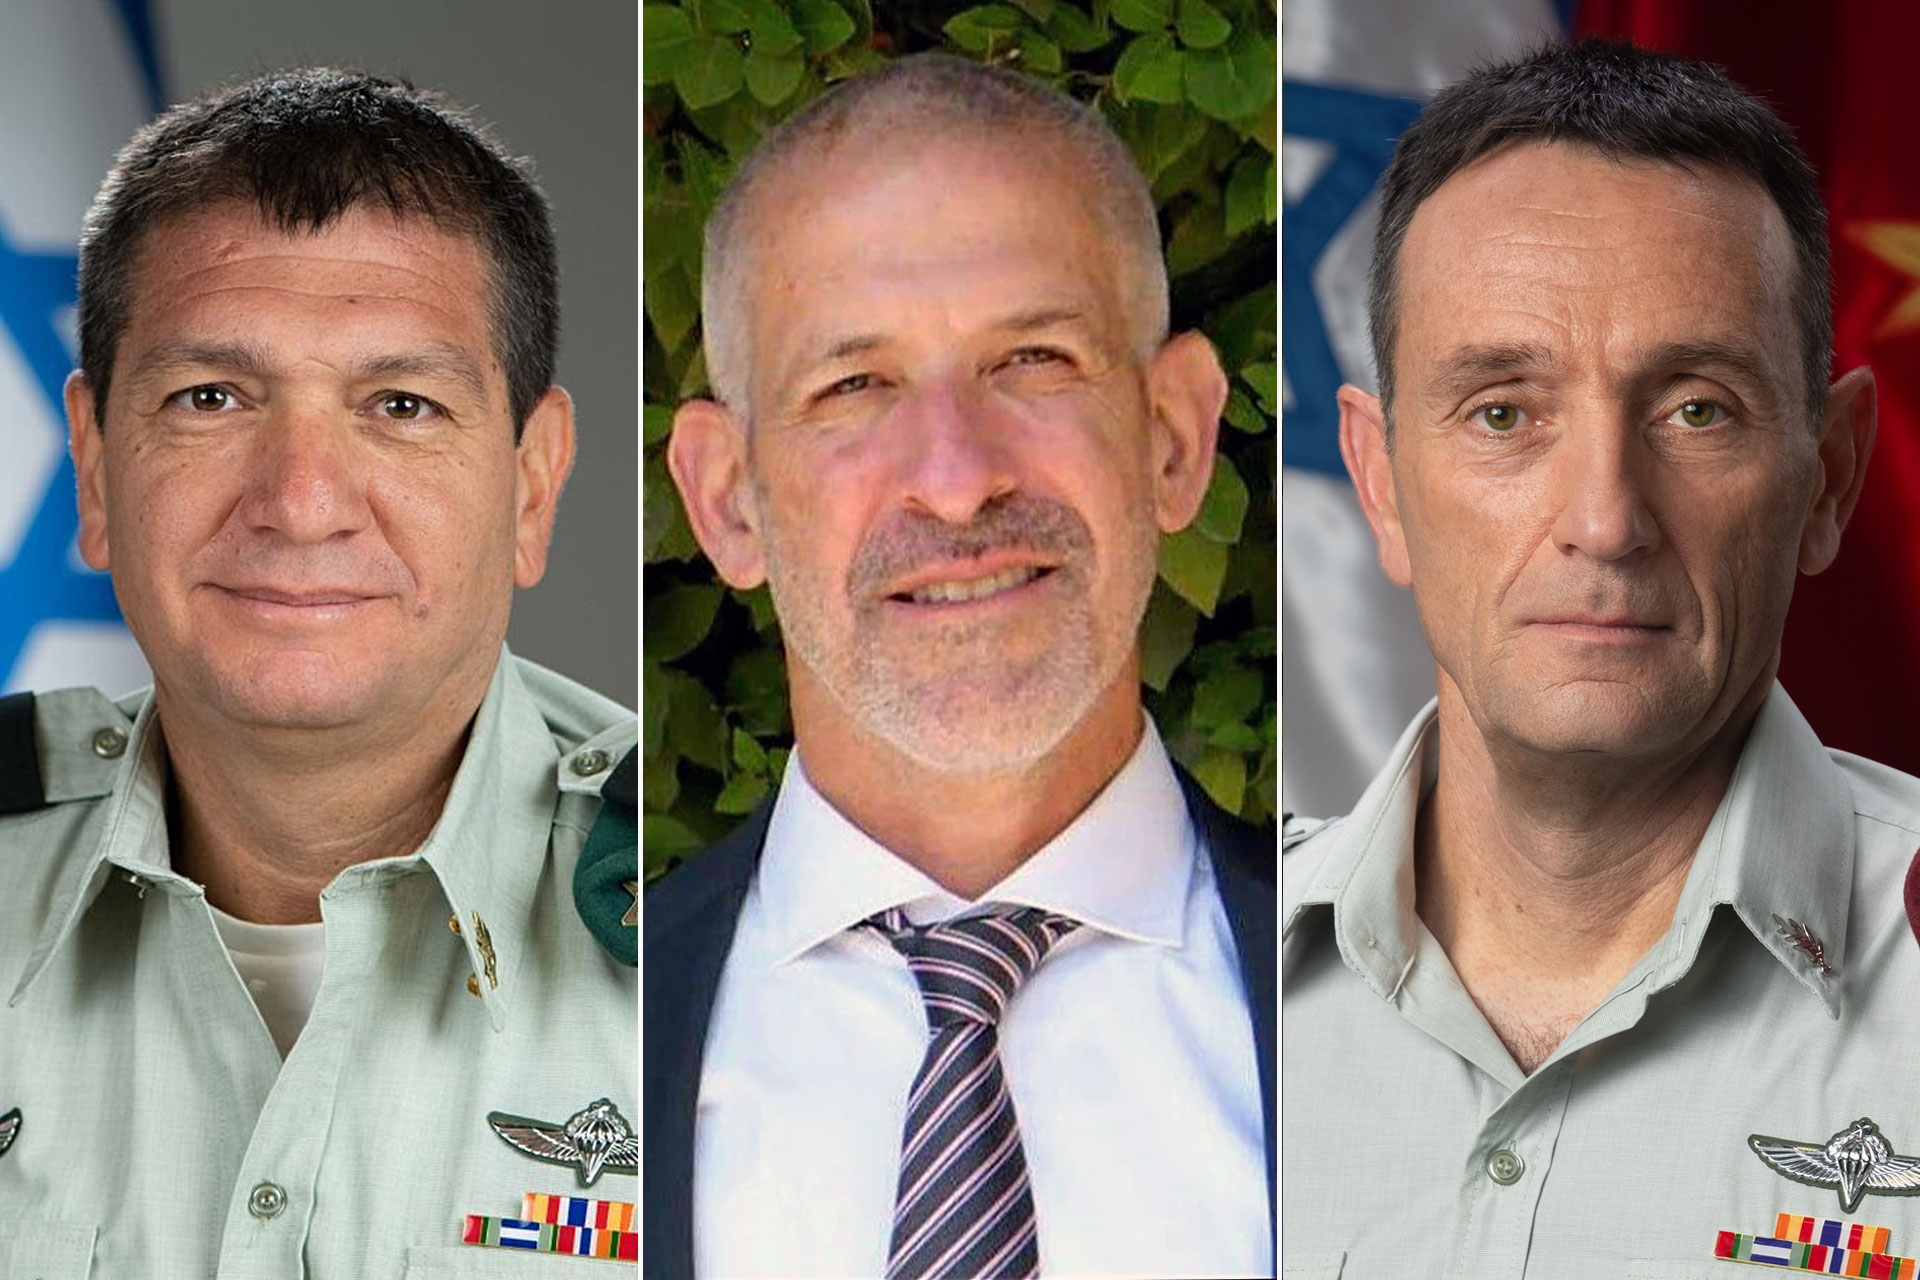 إعلام إسرائيلي: قادة المنظومة الأمنية قرروا الاستقالة من مناصبهم | أخبار – البوكس نيوز